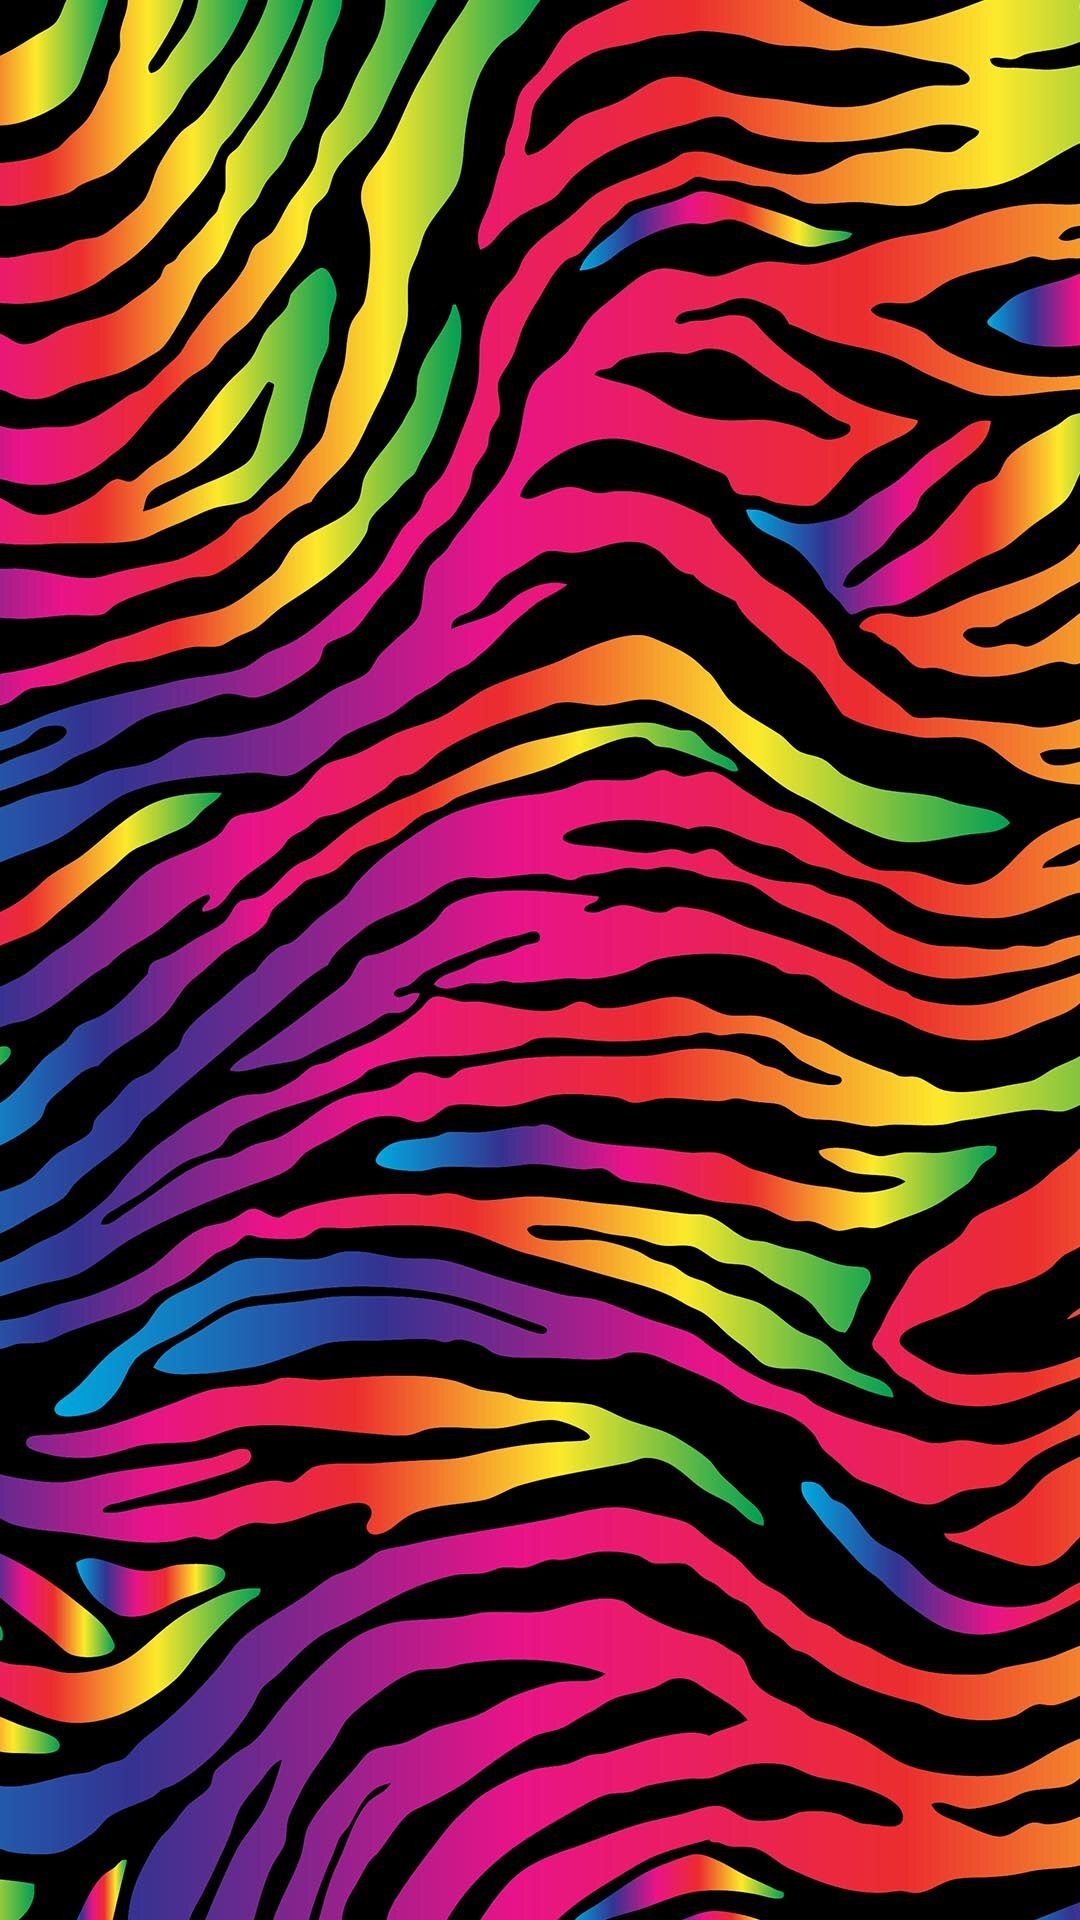 1080x1920 Zebra Print Wallpaper, Pattern Wallpaper, Crazy Wallpaper, Rainbow Wallpaper,  Kitty Wallpaper,